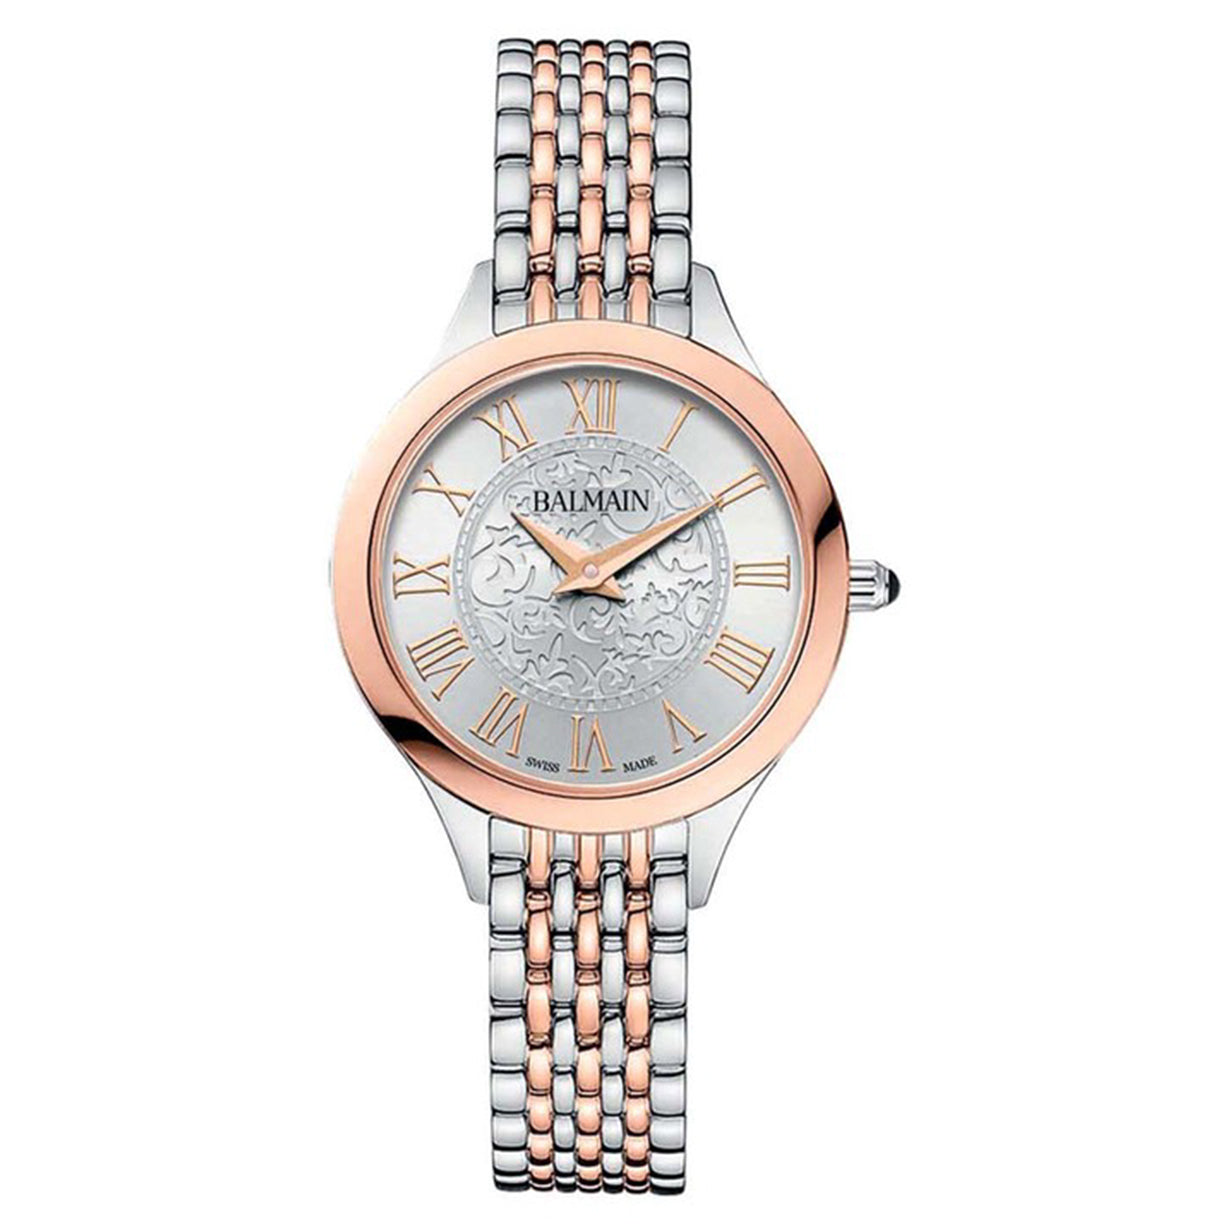 Pierre Balmain Vintage Ladies' Watch - Ref. 420.8180.3